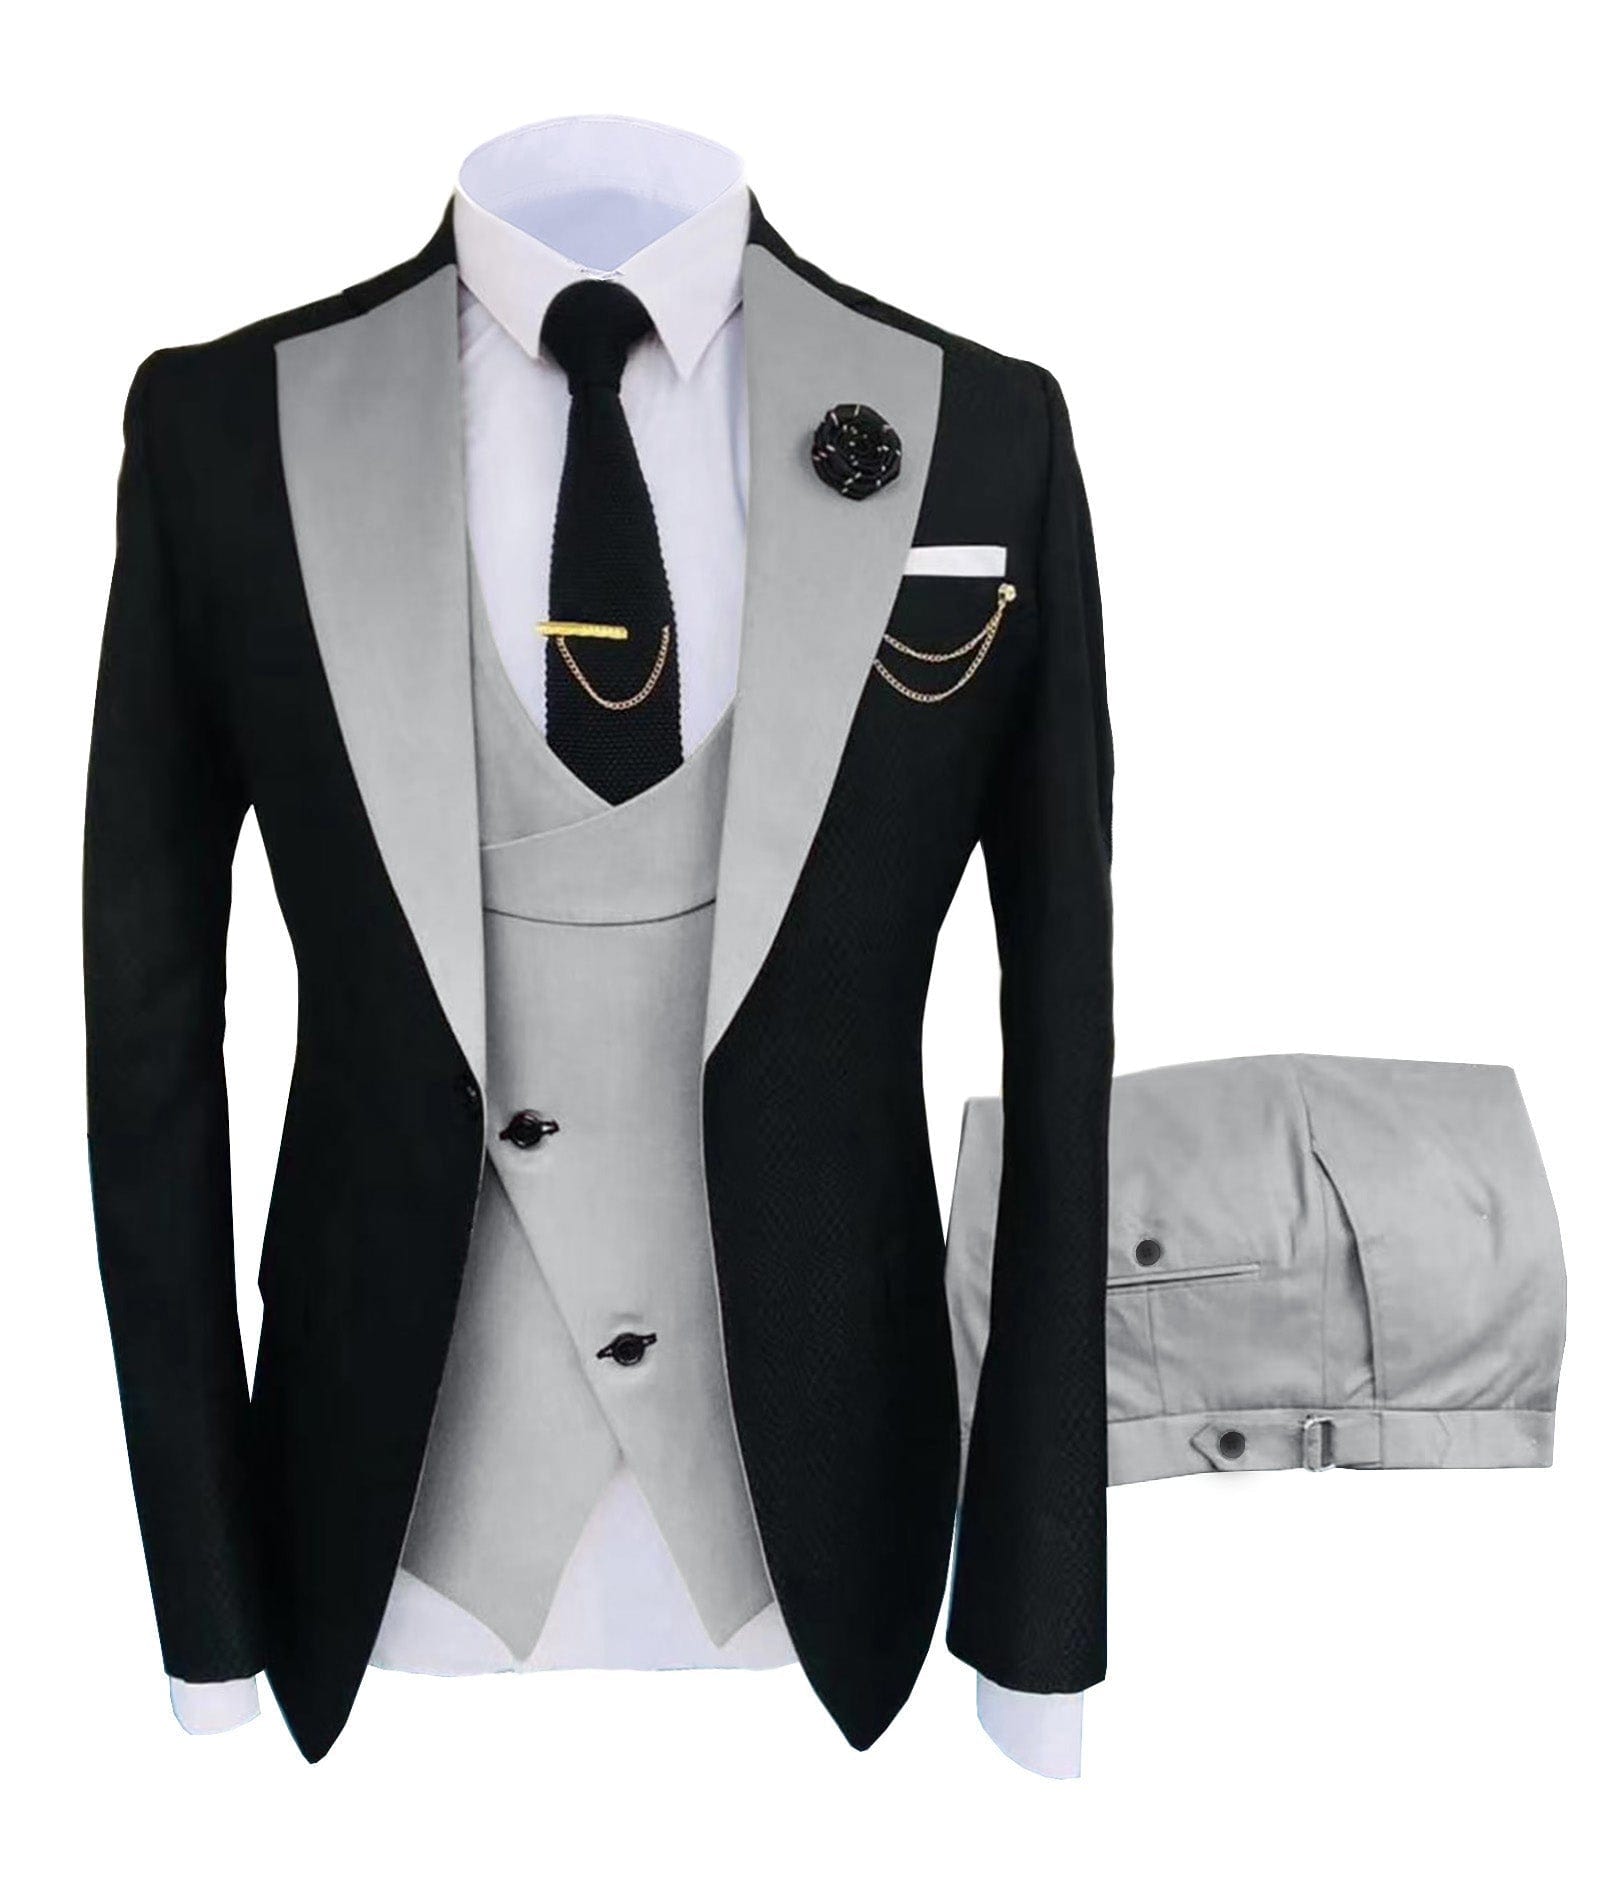 ceehuteey Men's Suits Slim Fit 3 Pieces Notch Lapel Tuxedos for Wedding (Blazer+Vest+Pant)